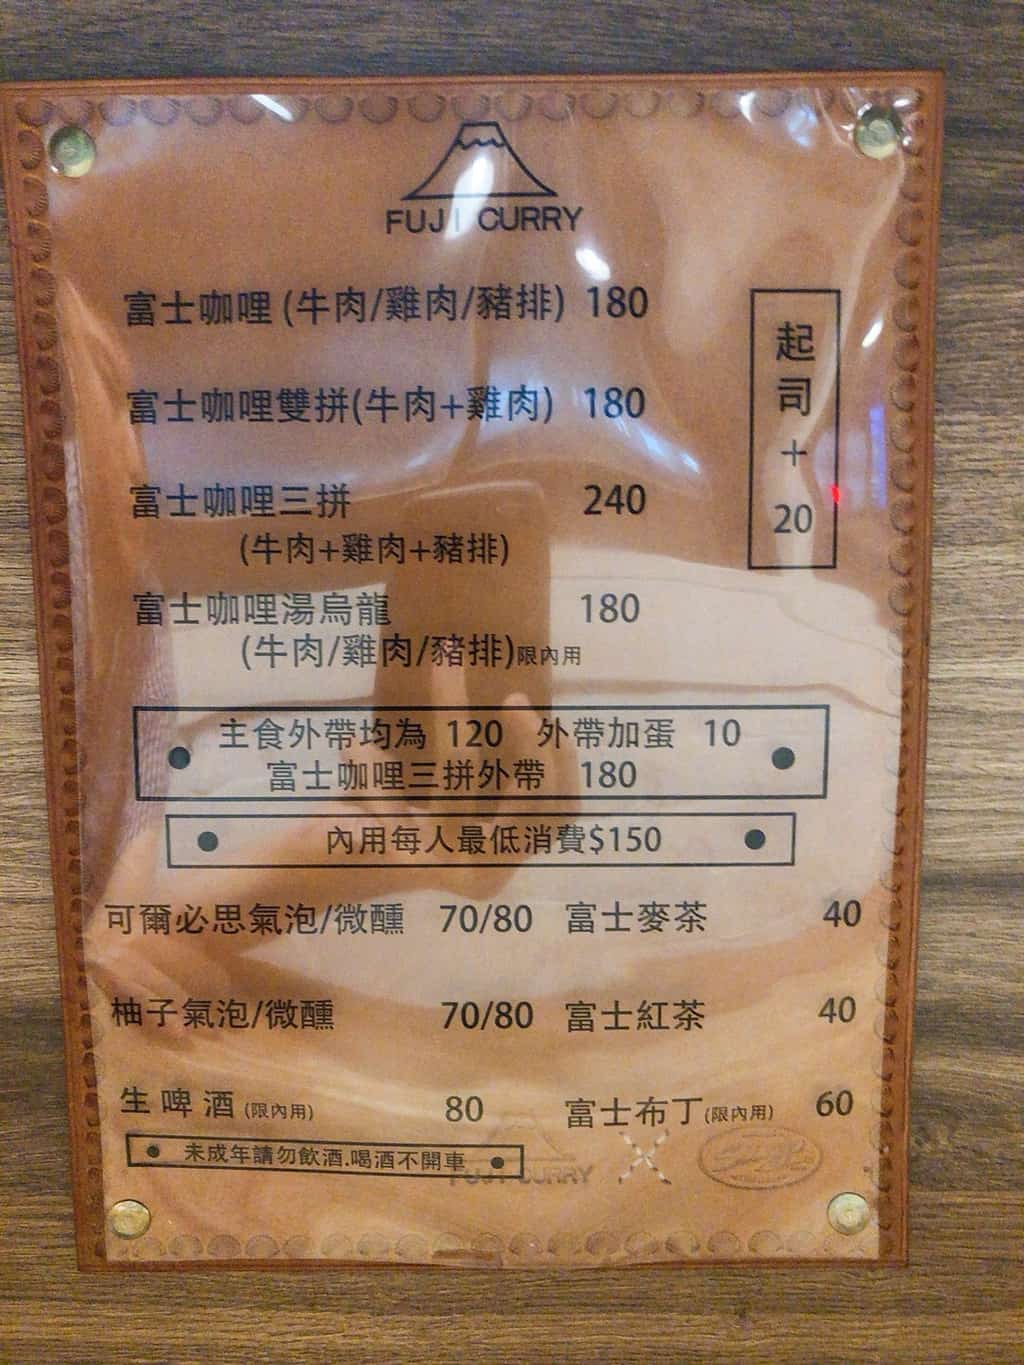  富士咖哩 菜單